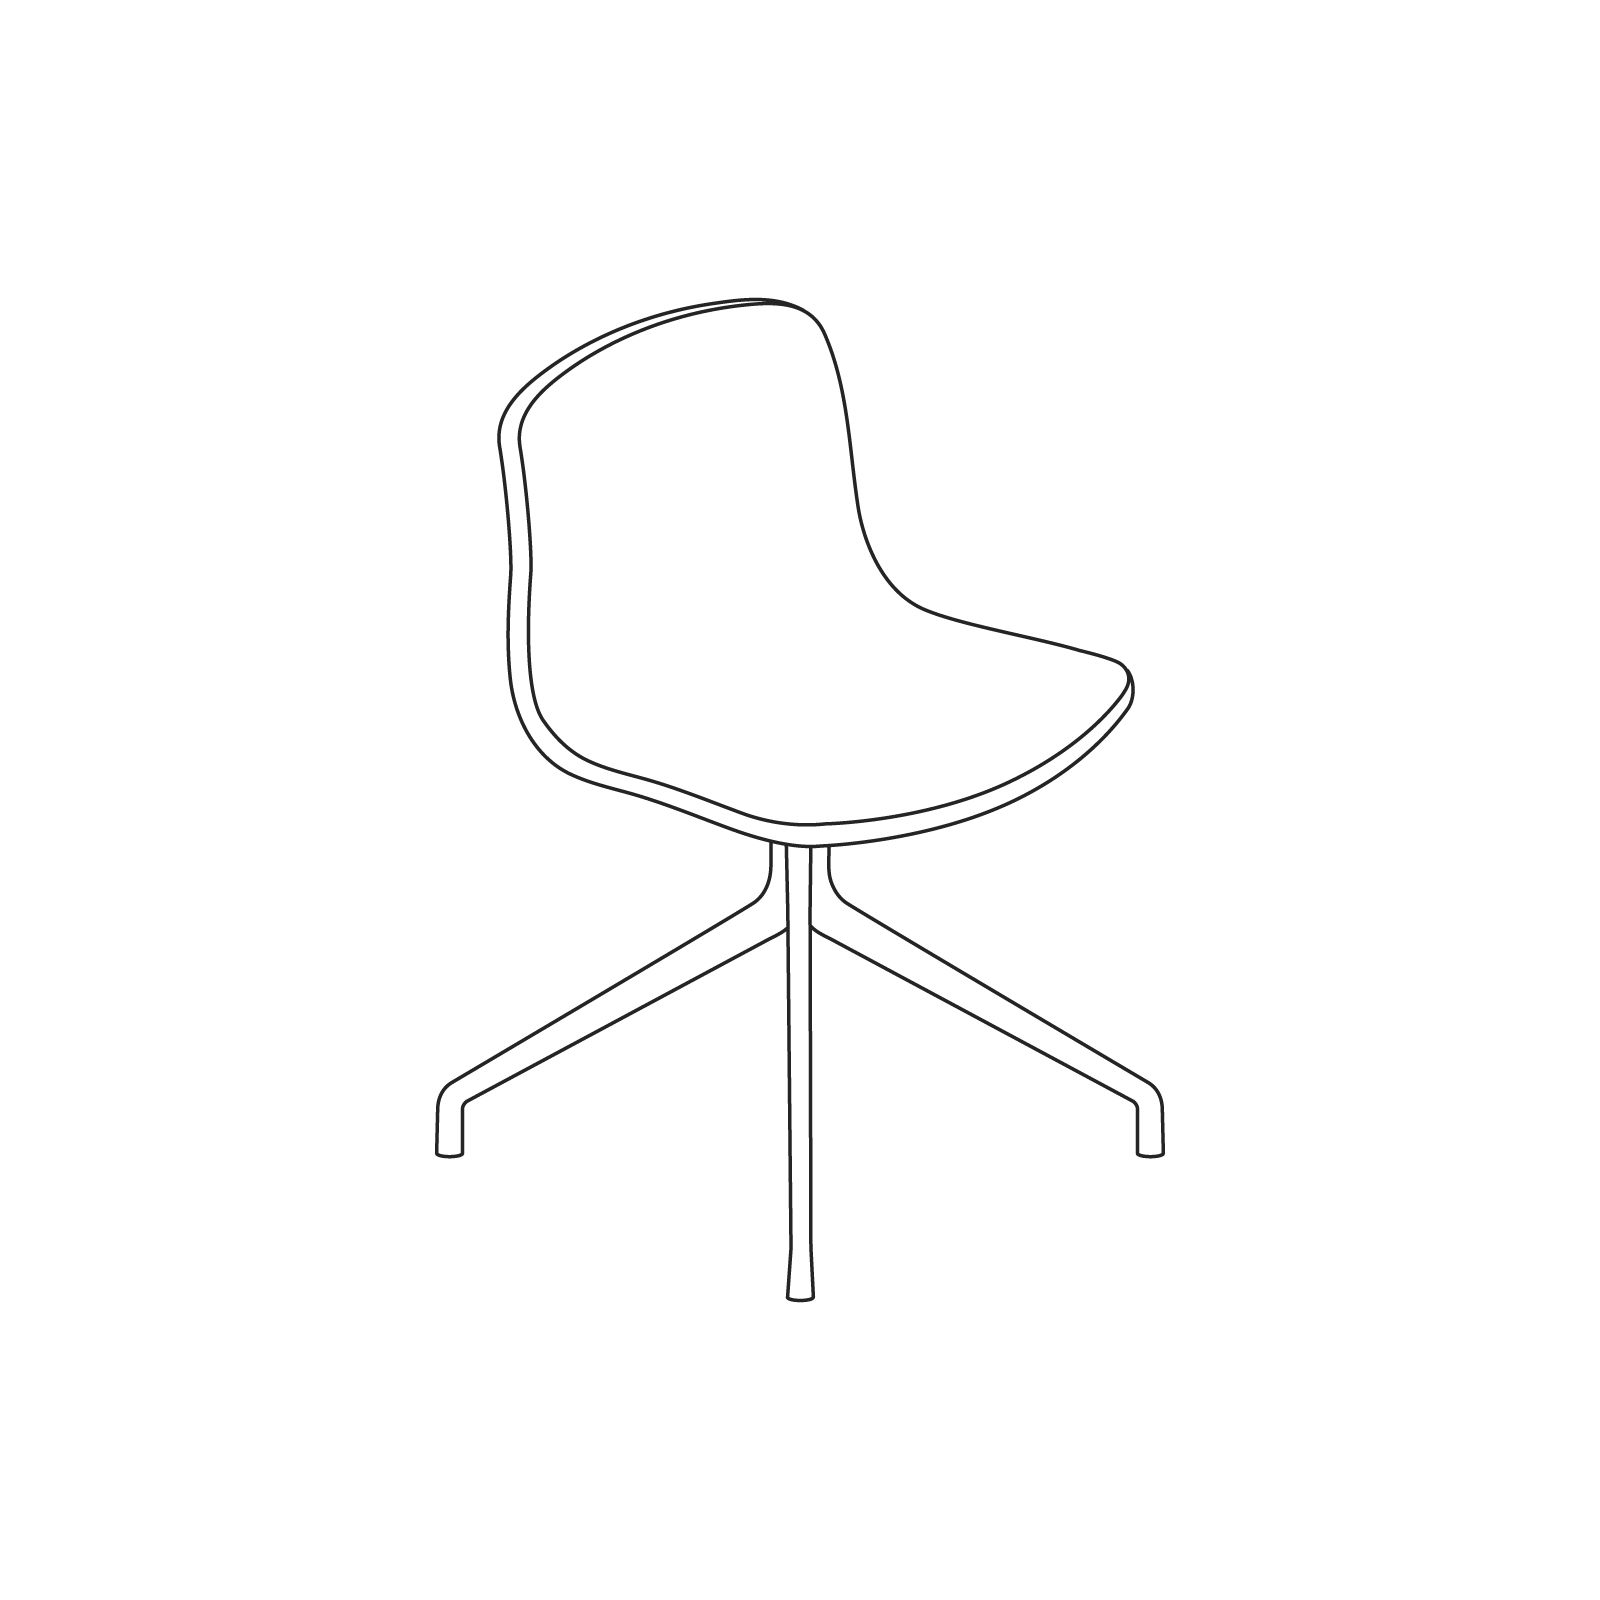 Um desenho de linha - About A Chair–Sem braços–Base 4 estrelas giratória (AAC10, AAC11)